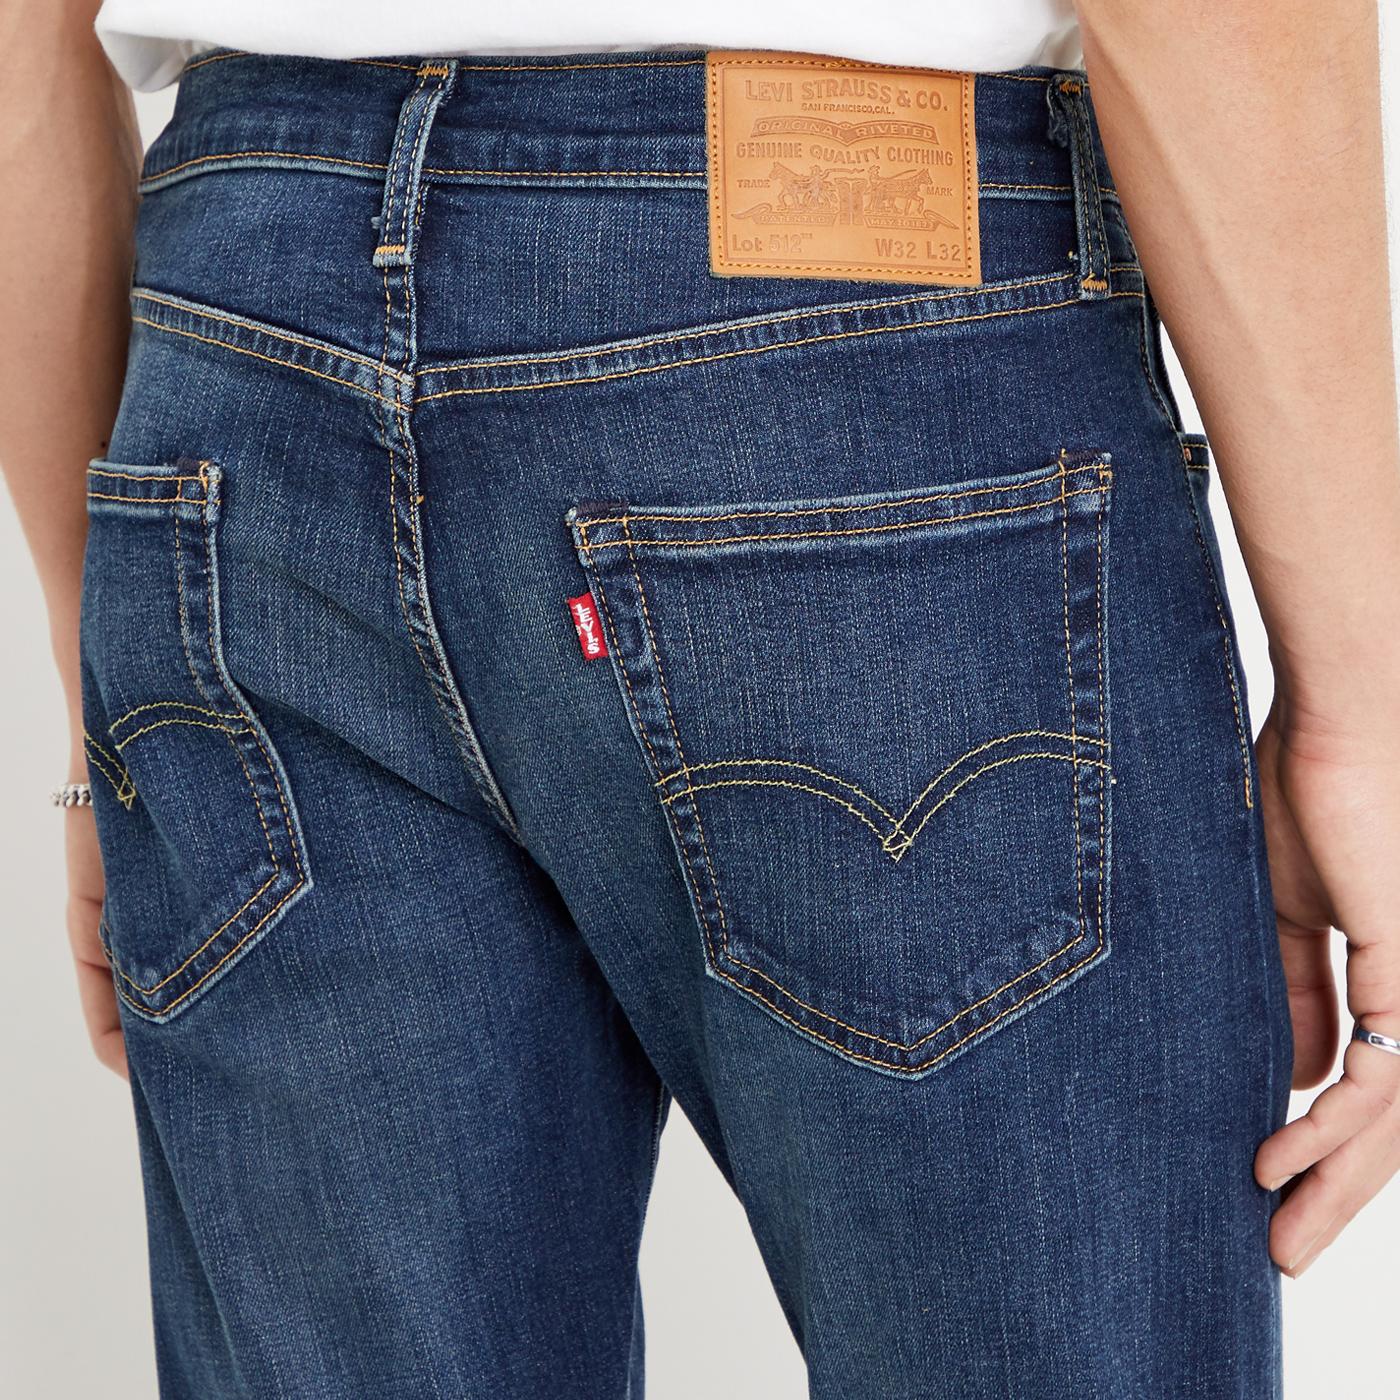 LEVI'S 512 Slim Taper Mod Denim Jeans in Brimstone Adv